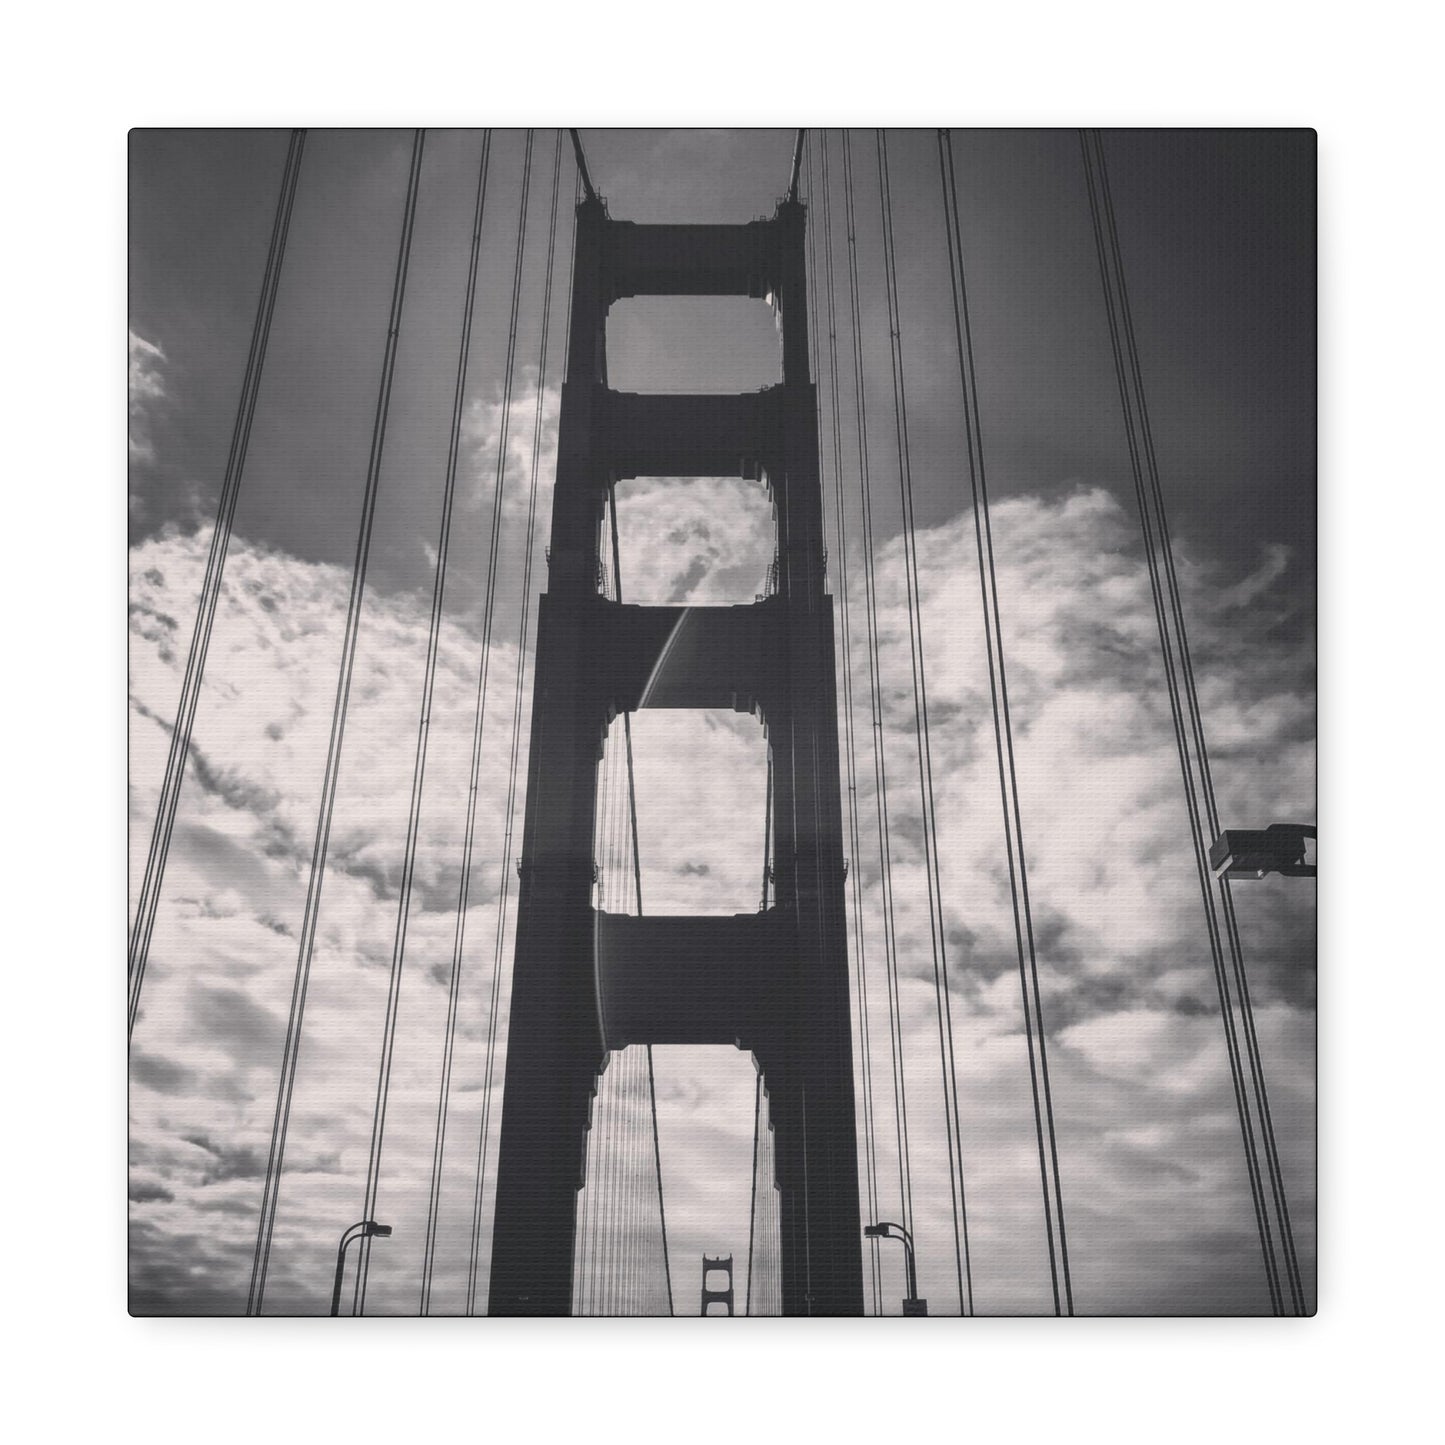 Golden Gate Bridge - Gallery Canvas